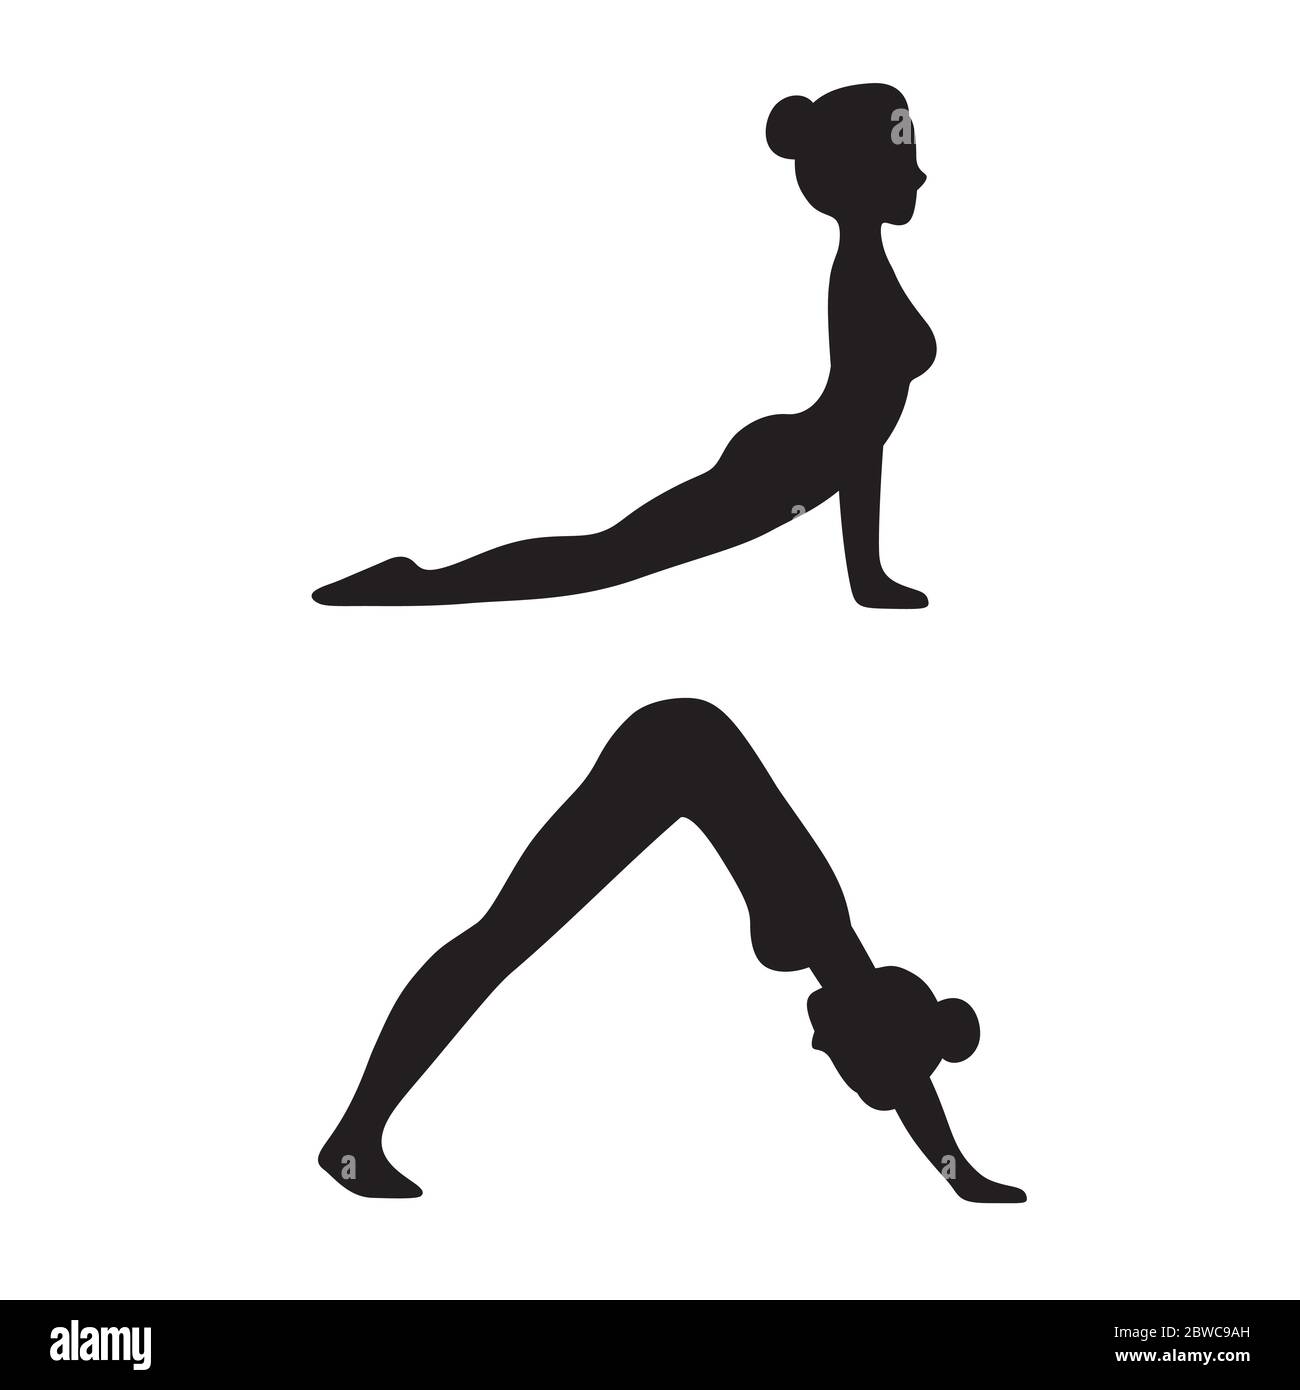 Downward facing dog (Adho mukha svanasana) and Upward facing dog (Urdhva mukha svanasana) yoga pose. Slim young woman in yoga asana, simple black and Stock Vector